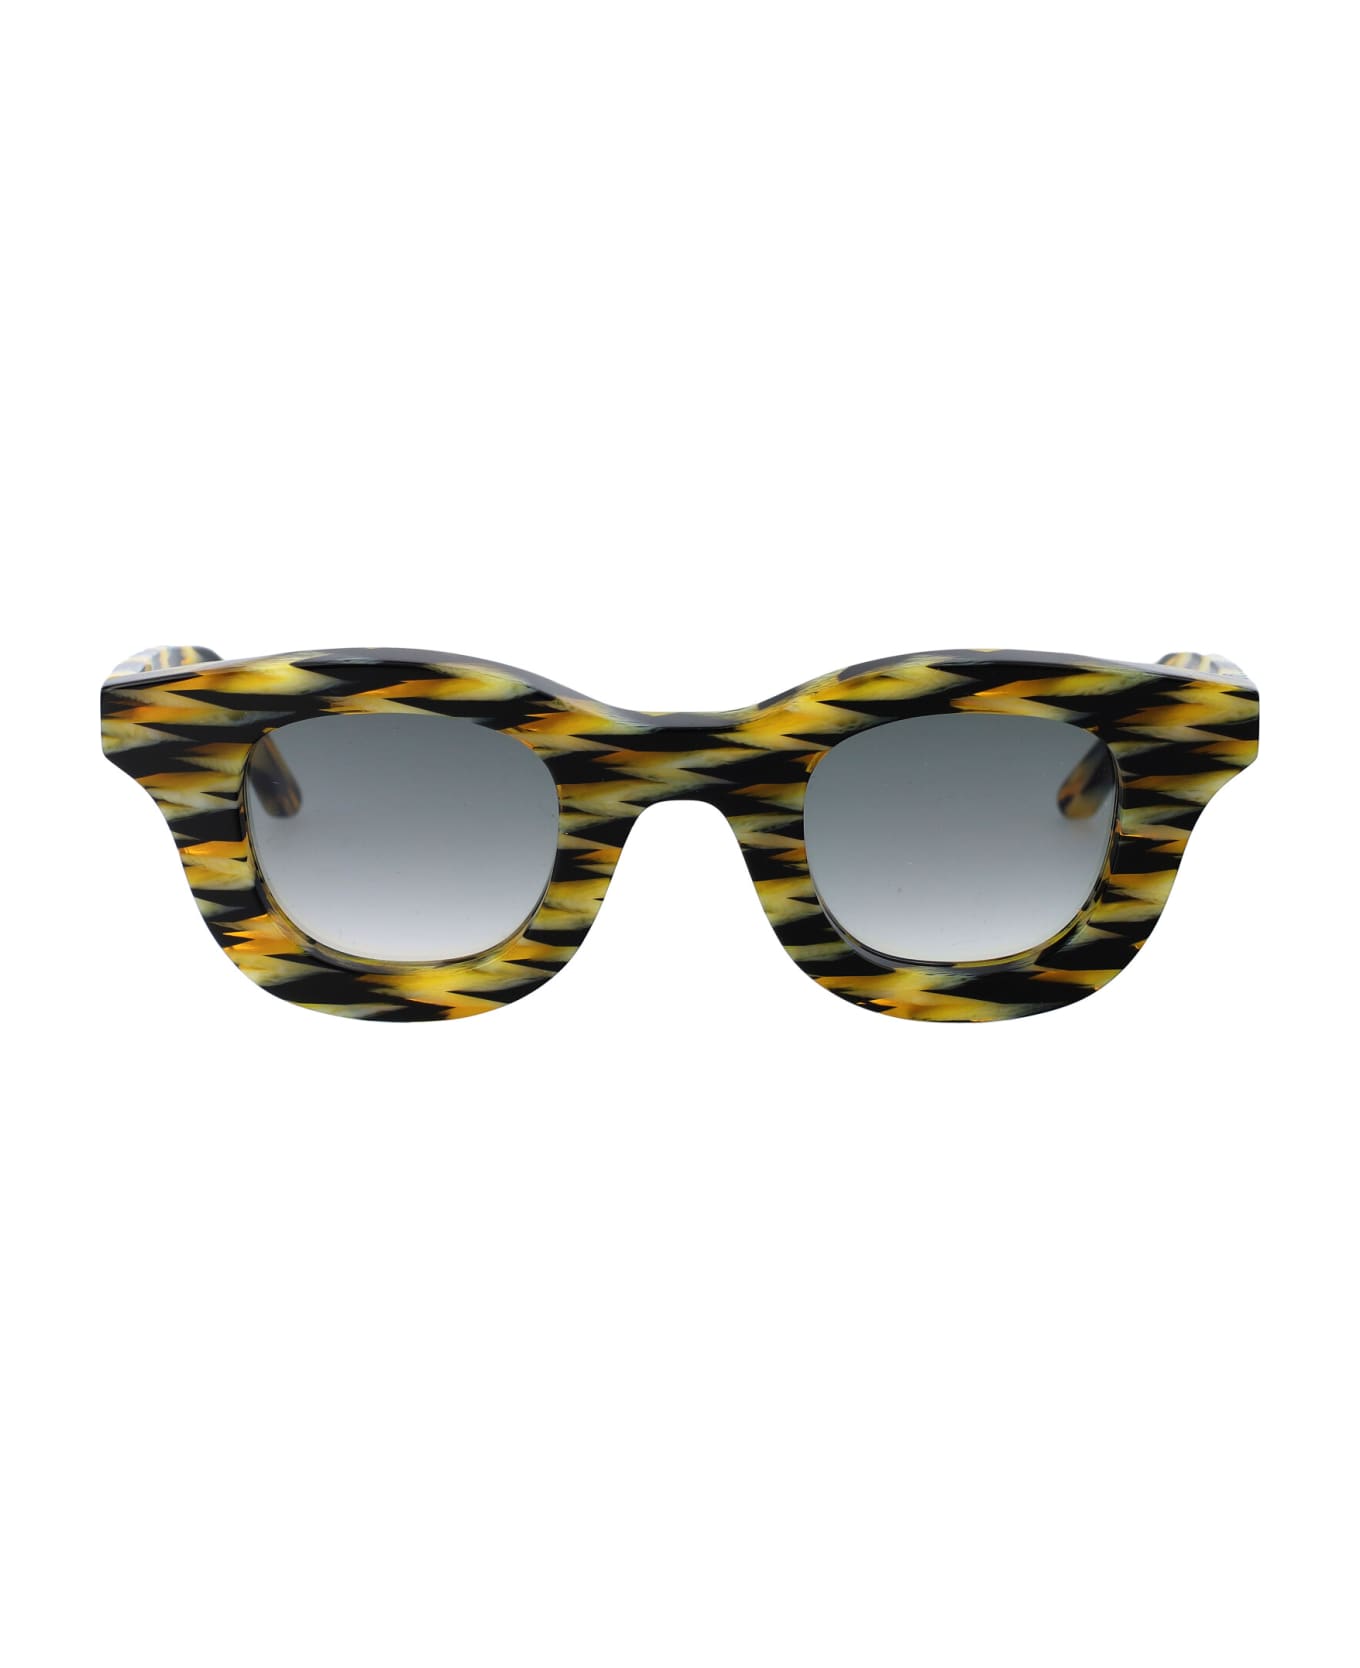 Thierry Lasry Hacktivity Sunglasses - 3101 MULTICOLOR